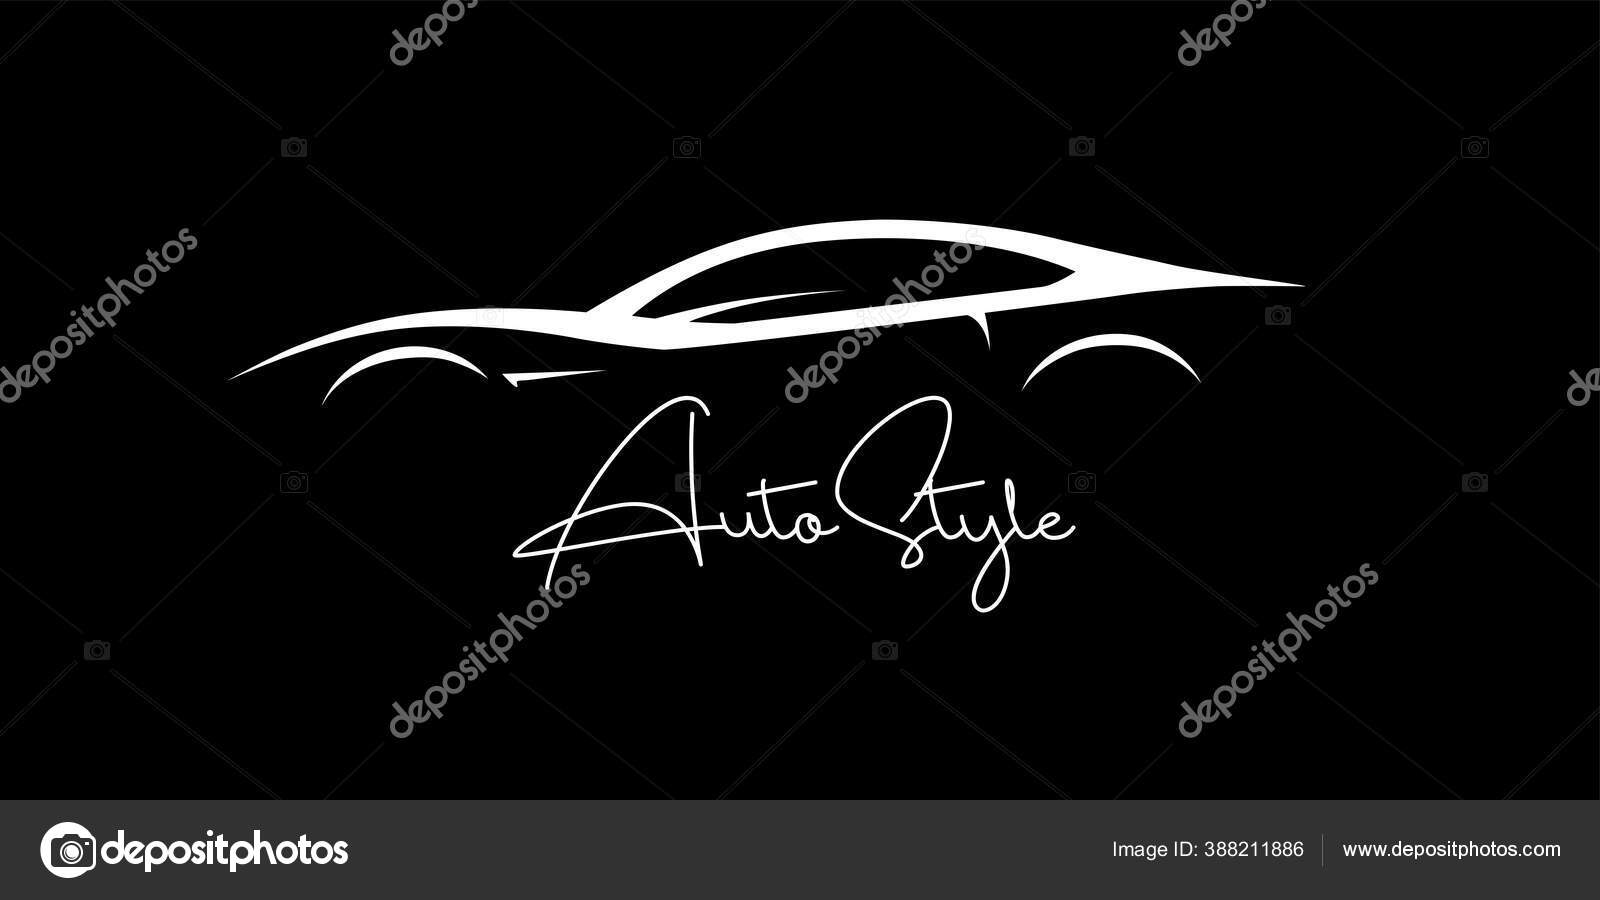 Sportwagen-Silhouette-Logo. Performance-Supercar-Kraftfahrzeug-Abzeichen.  Autohaus-Garage-Ikone Im Auto-Stil. Vektor-Illustration. Lizenzfrei  nutzbare SVG, Vektorgrafiken, Clip Arts, Illustrationen. Image 175067542.